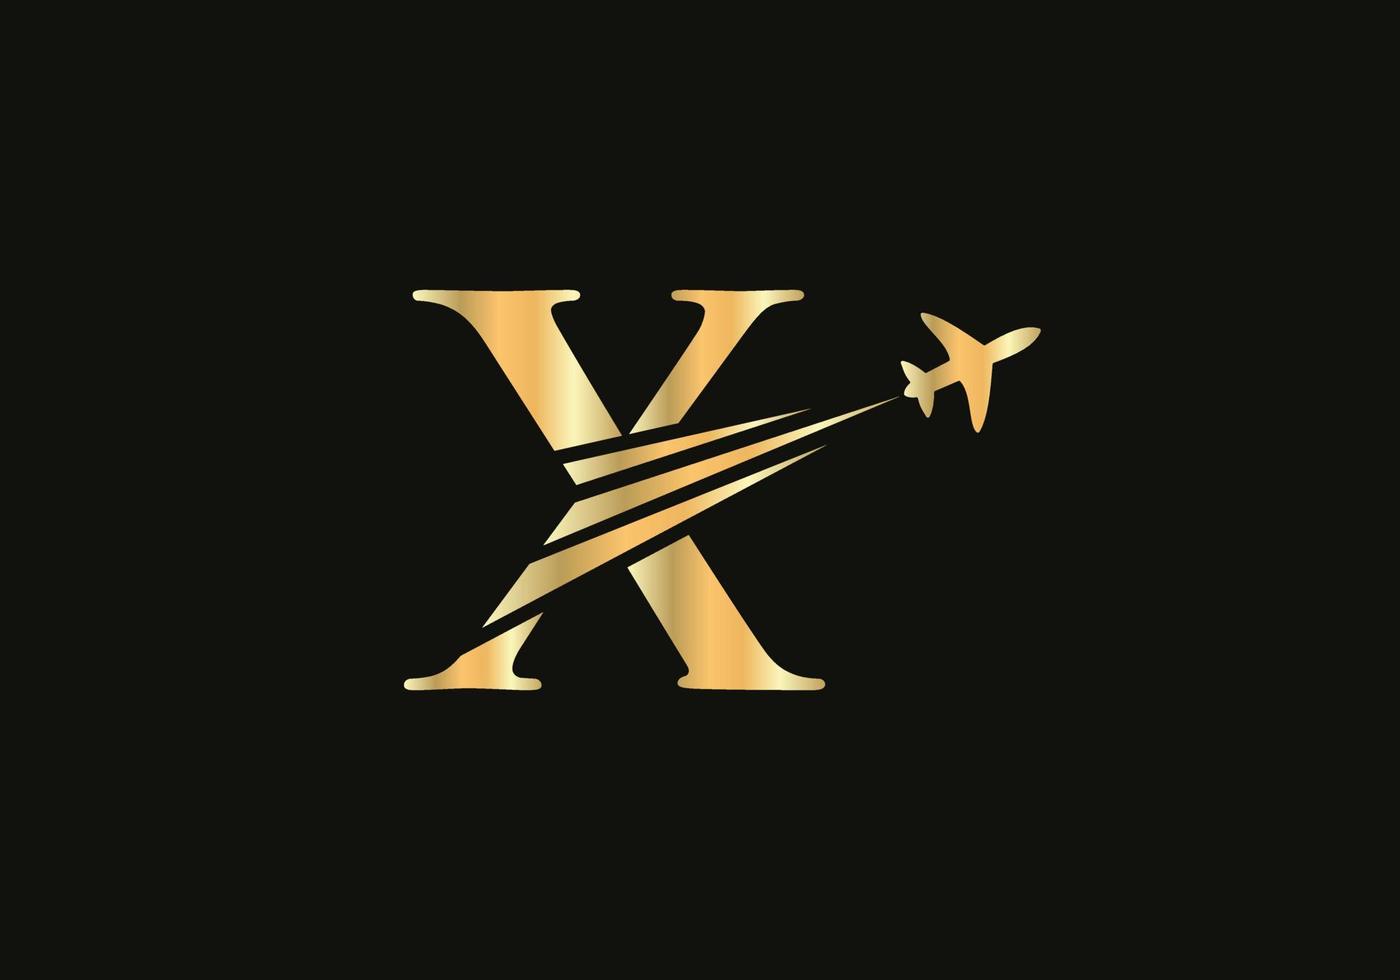 concepto de diseño de logotipo de viaje con letra x con símbolo de avión volador vector